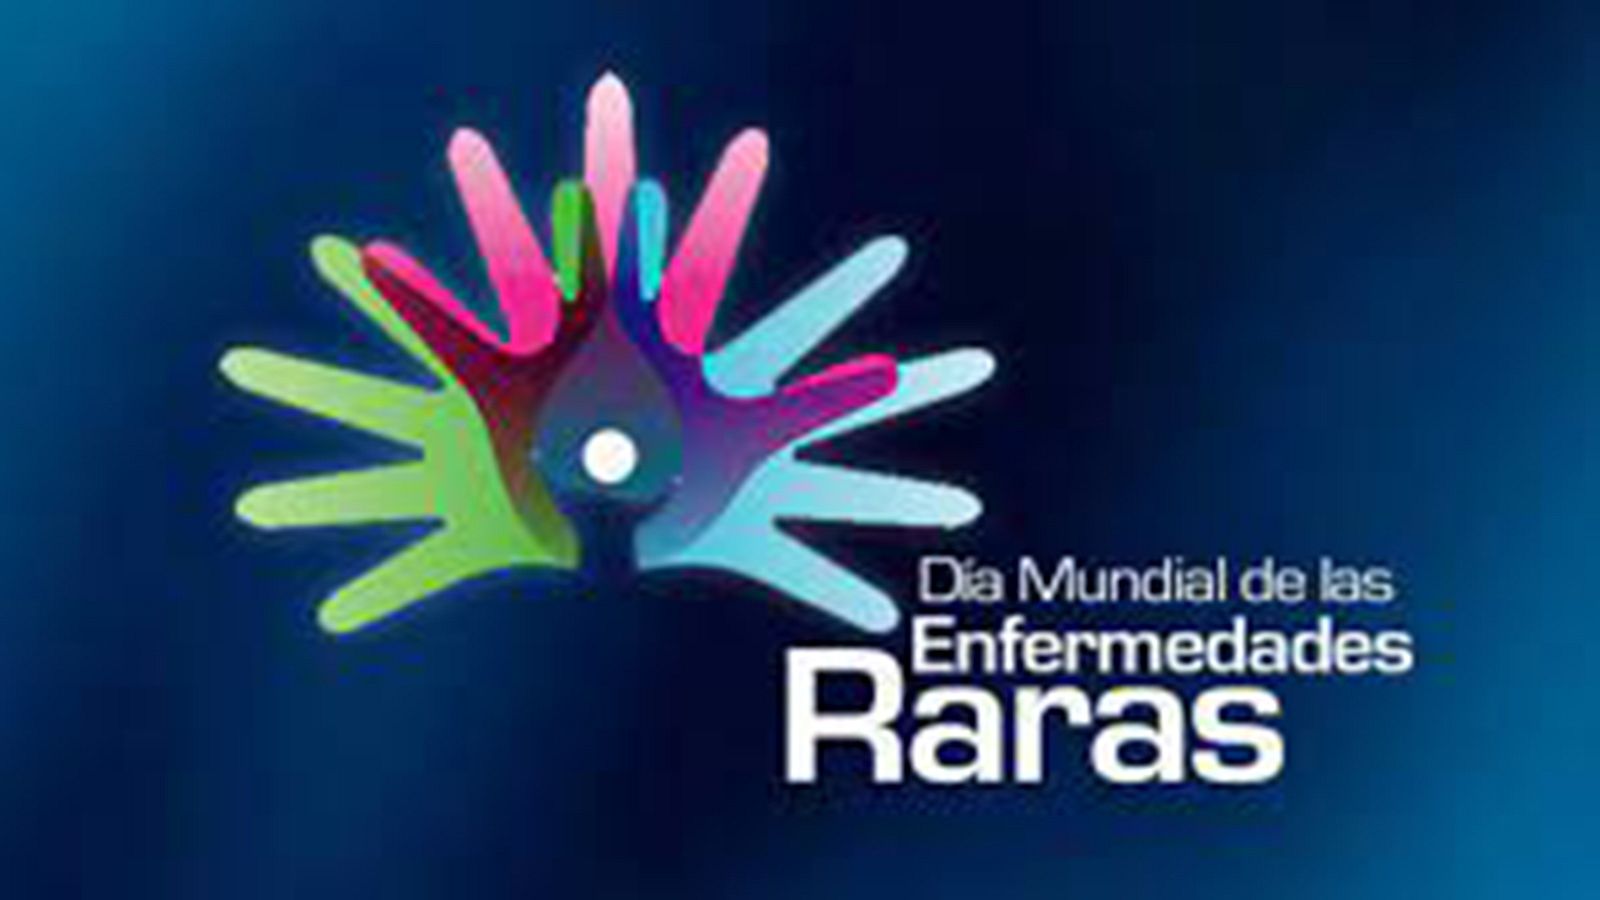  El 28 de febrero se celebra el Día Mundial de las Enfermedades Raras